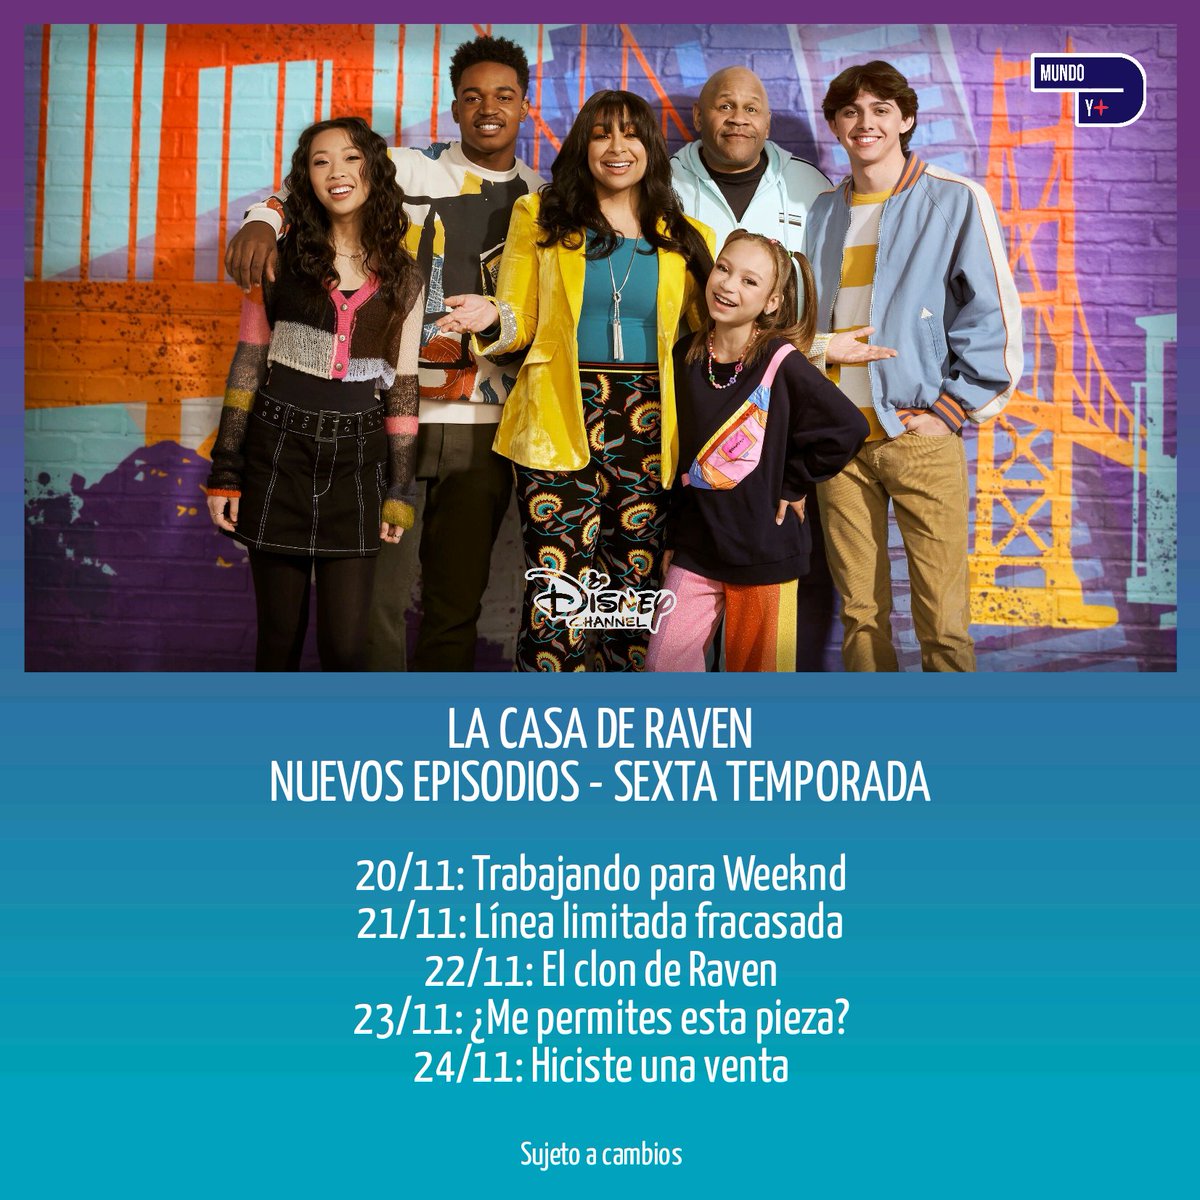 👁️ #LaCasaDeRaven
🆕 Nuevos episodios de la sexta temporada
🗓️ 20 al 24 de noviembre
📺 Disney Channel LA
🇵🇪 2:30pm
🇦🇷🇨🇱🇲🇽🇨🇴🇧🇷 4:30pm
🇻🇪 5:30pm